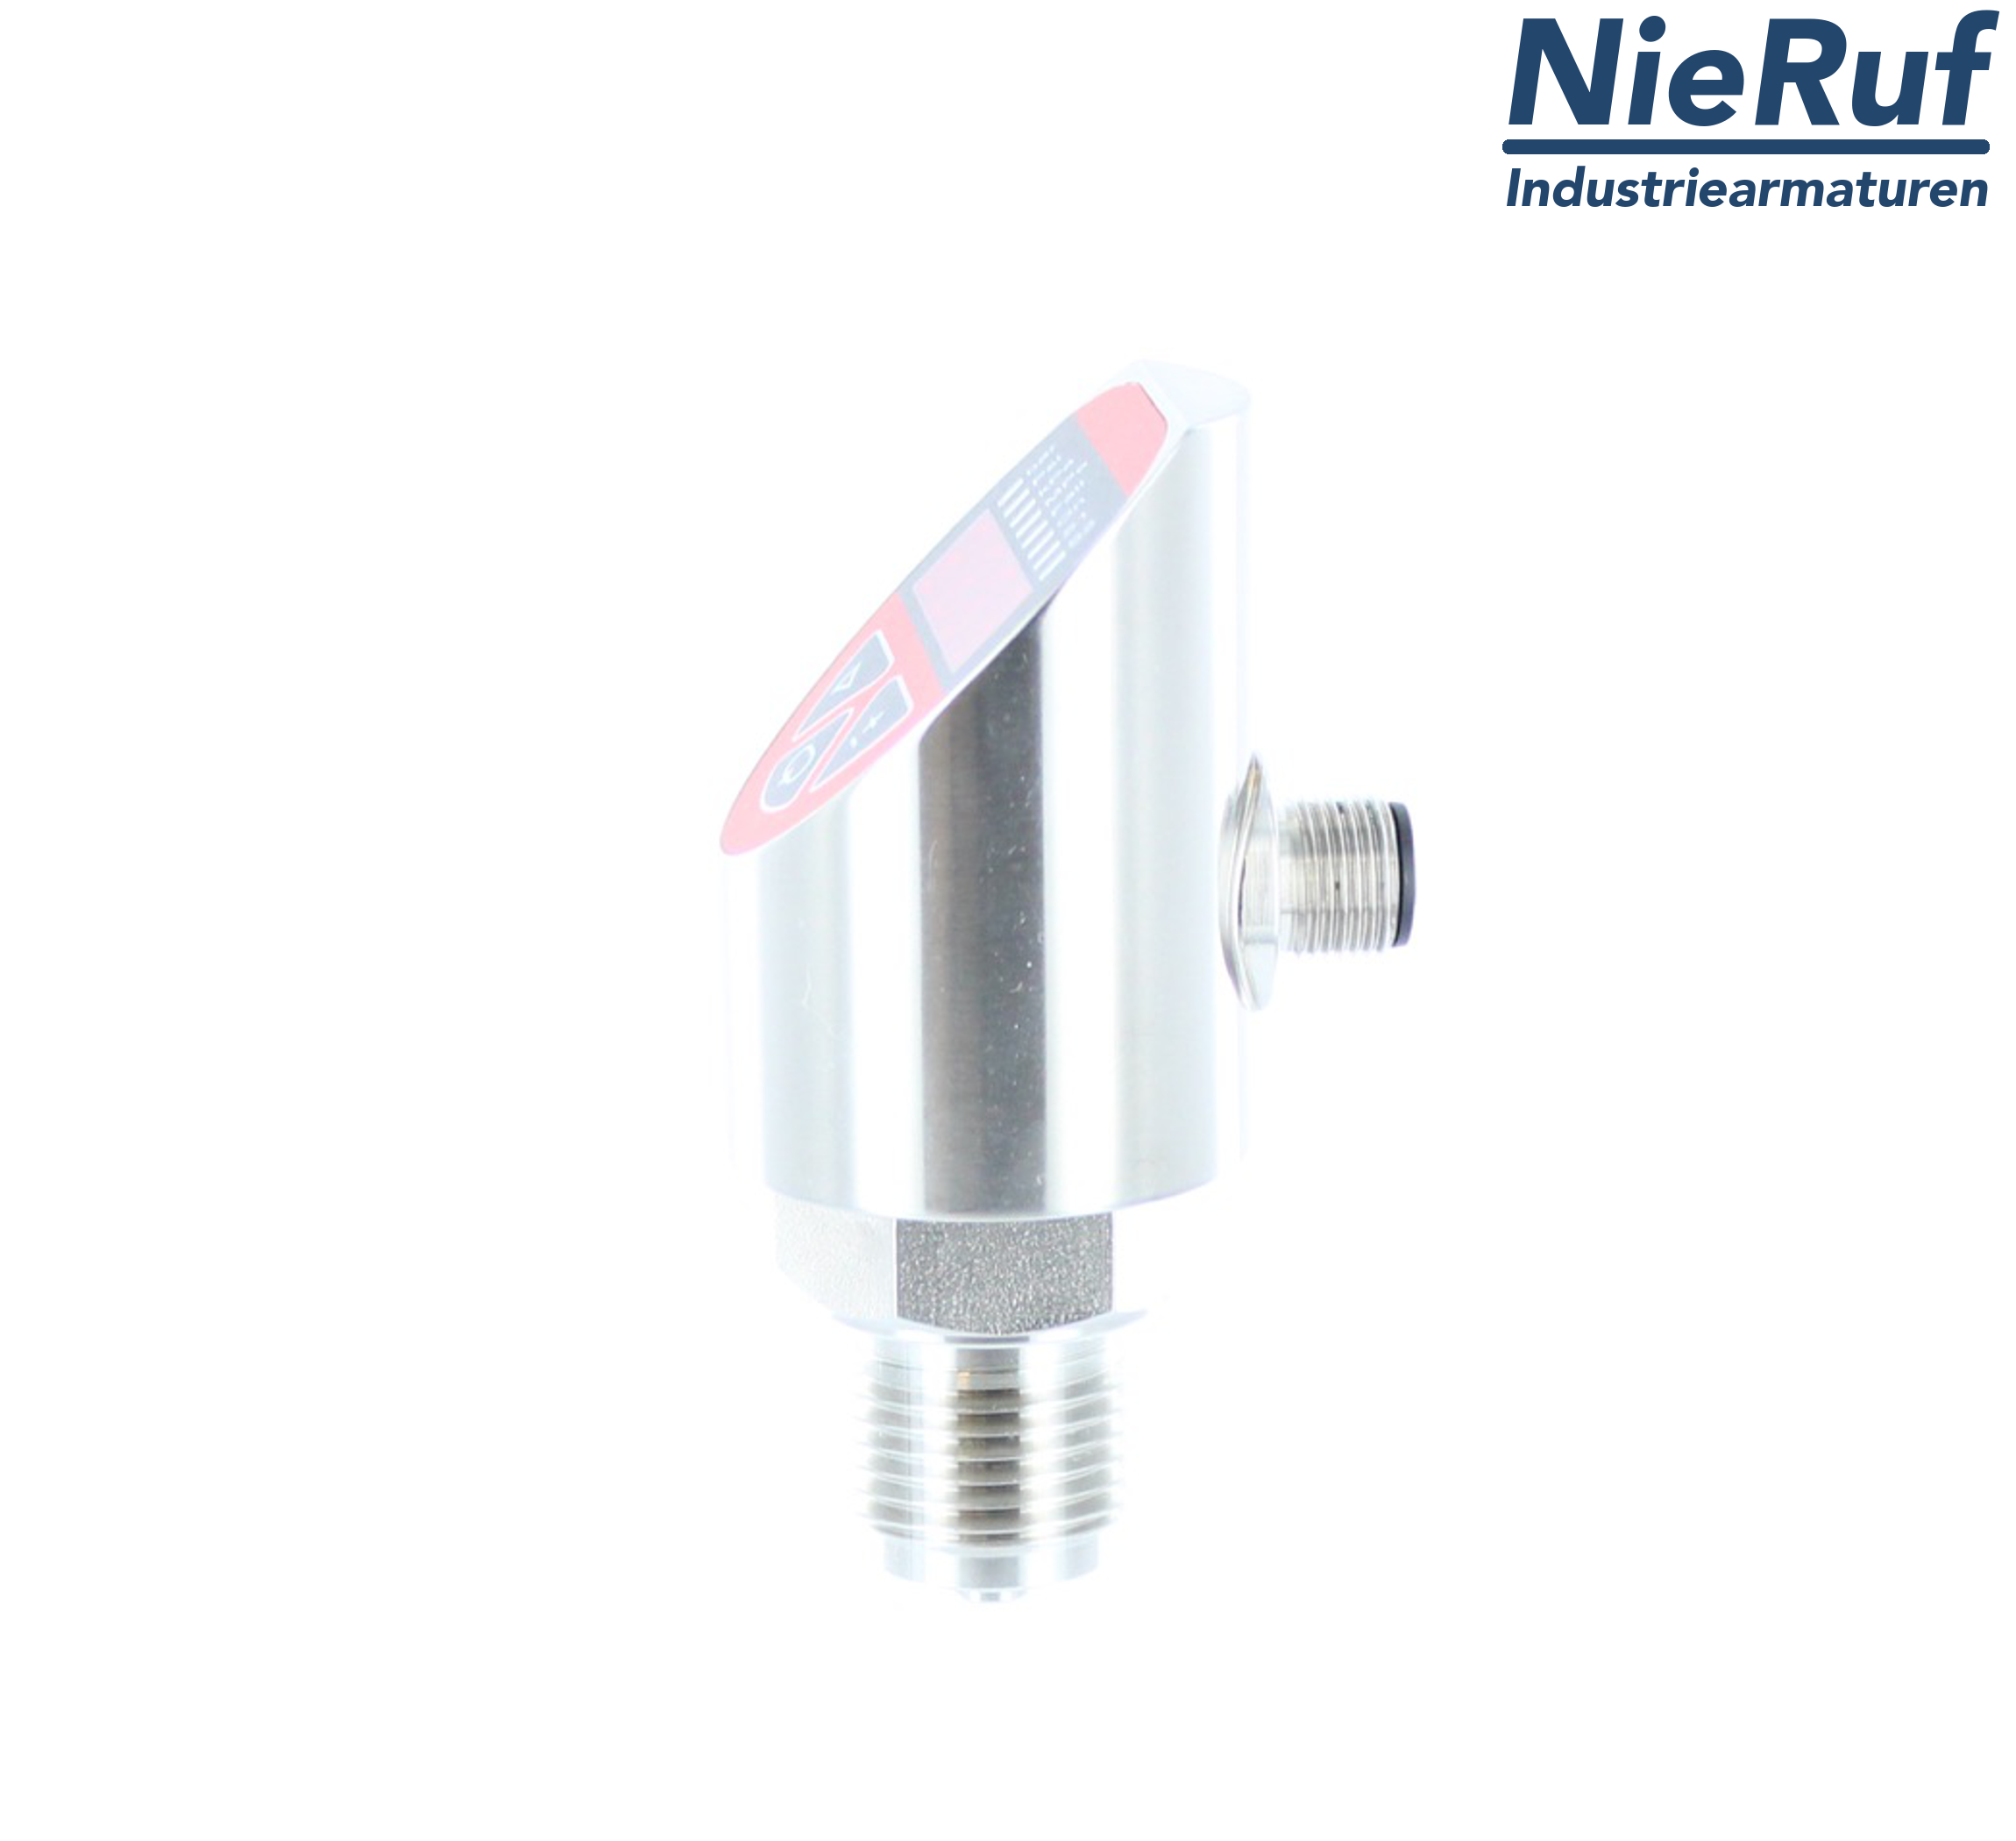 digital pressure sensor G 1/2" B IB 4-wire: 1xPNP, 1x4 - 20mA FPM 0,0 - 2,5 bar